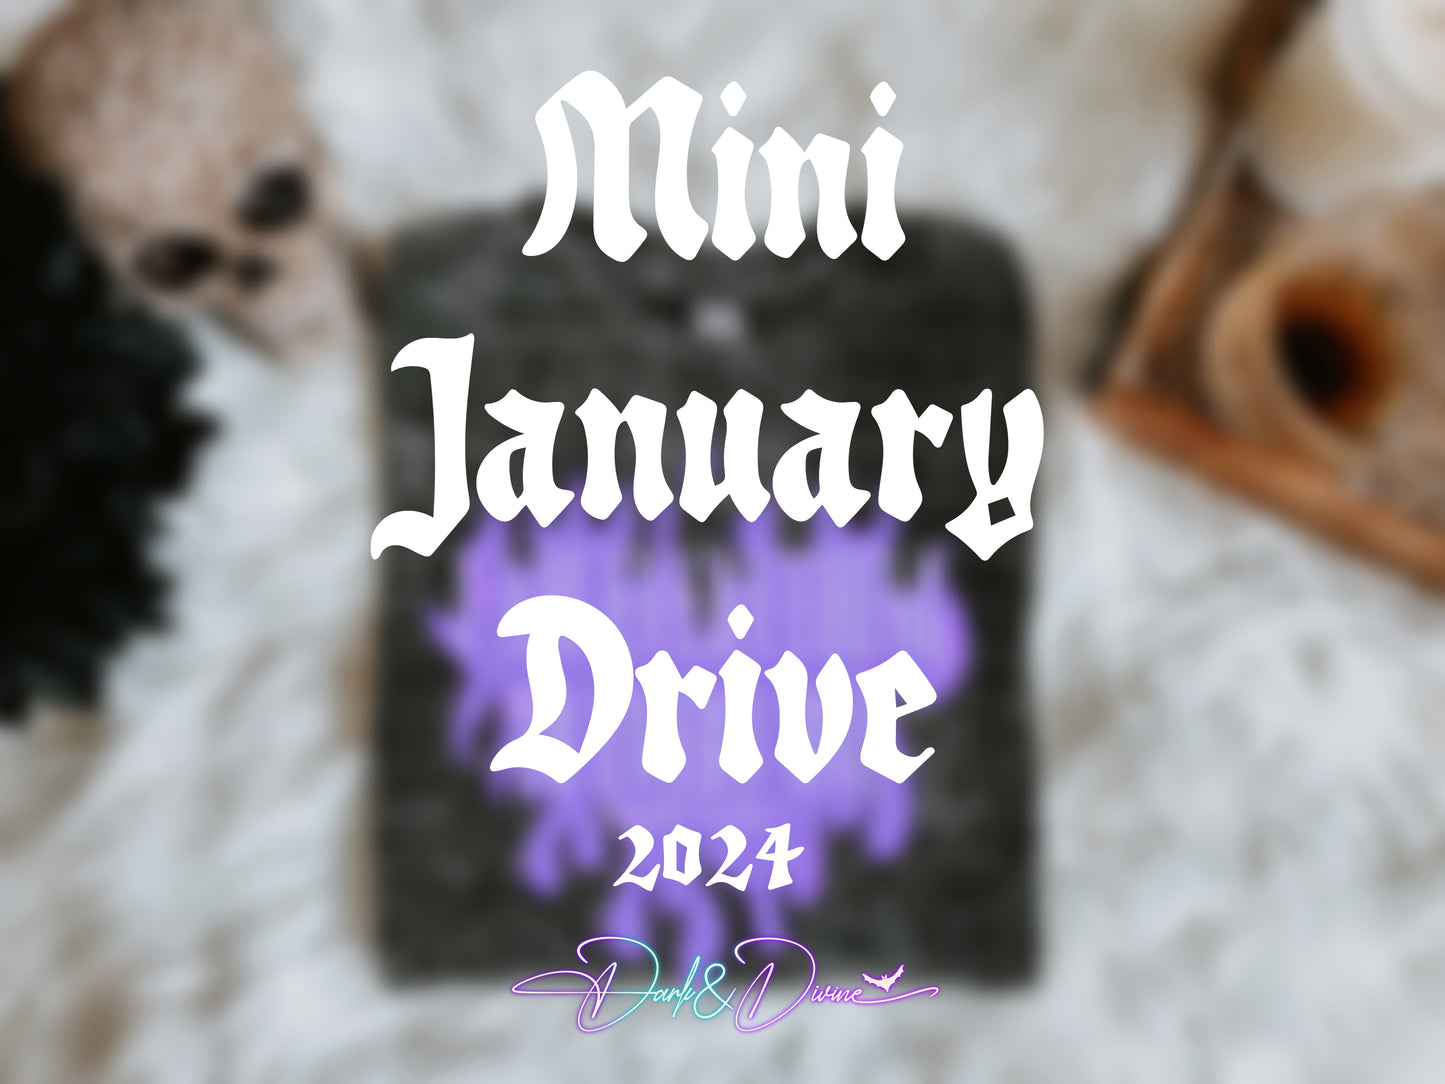 Mini January Drive